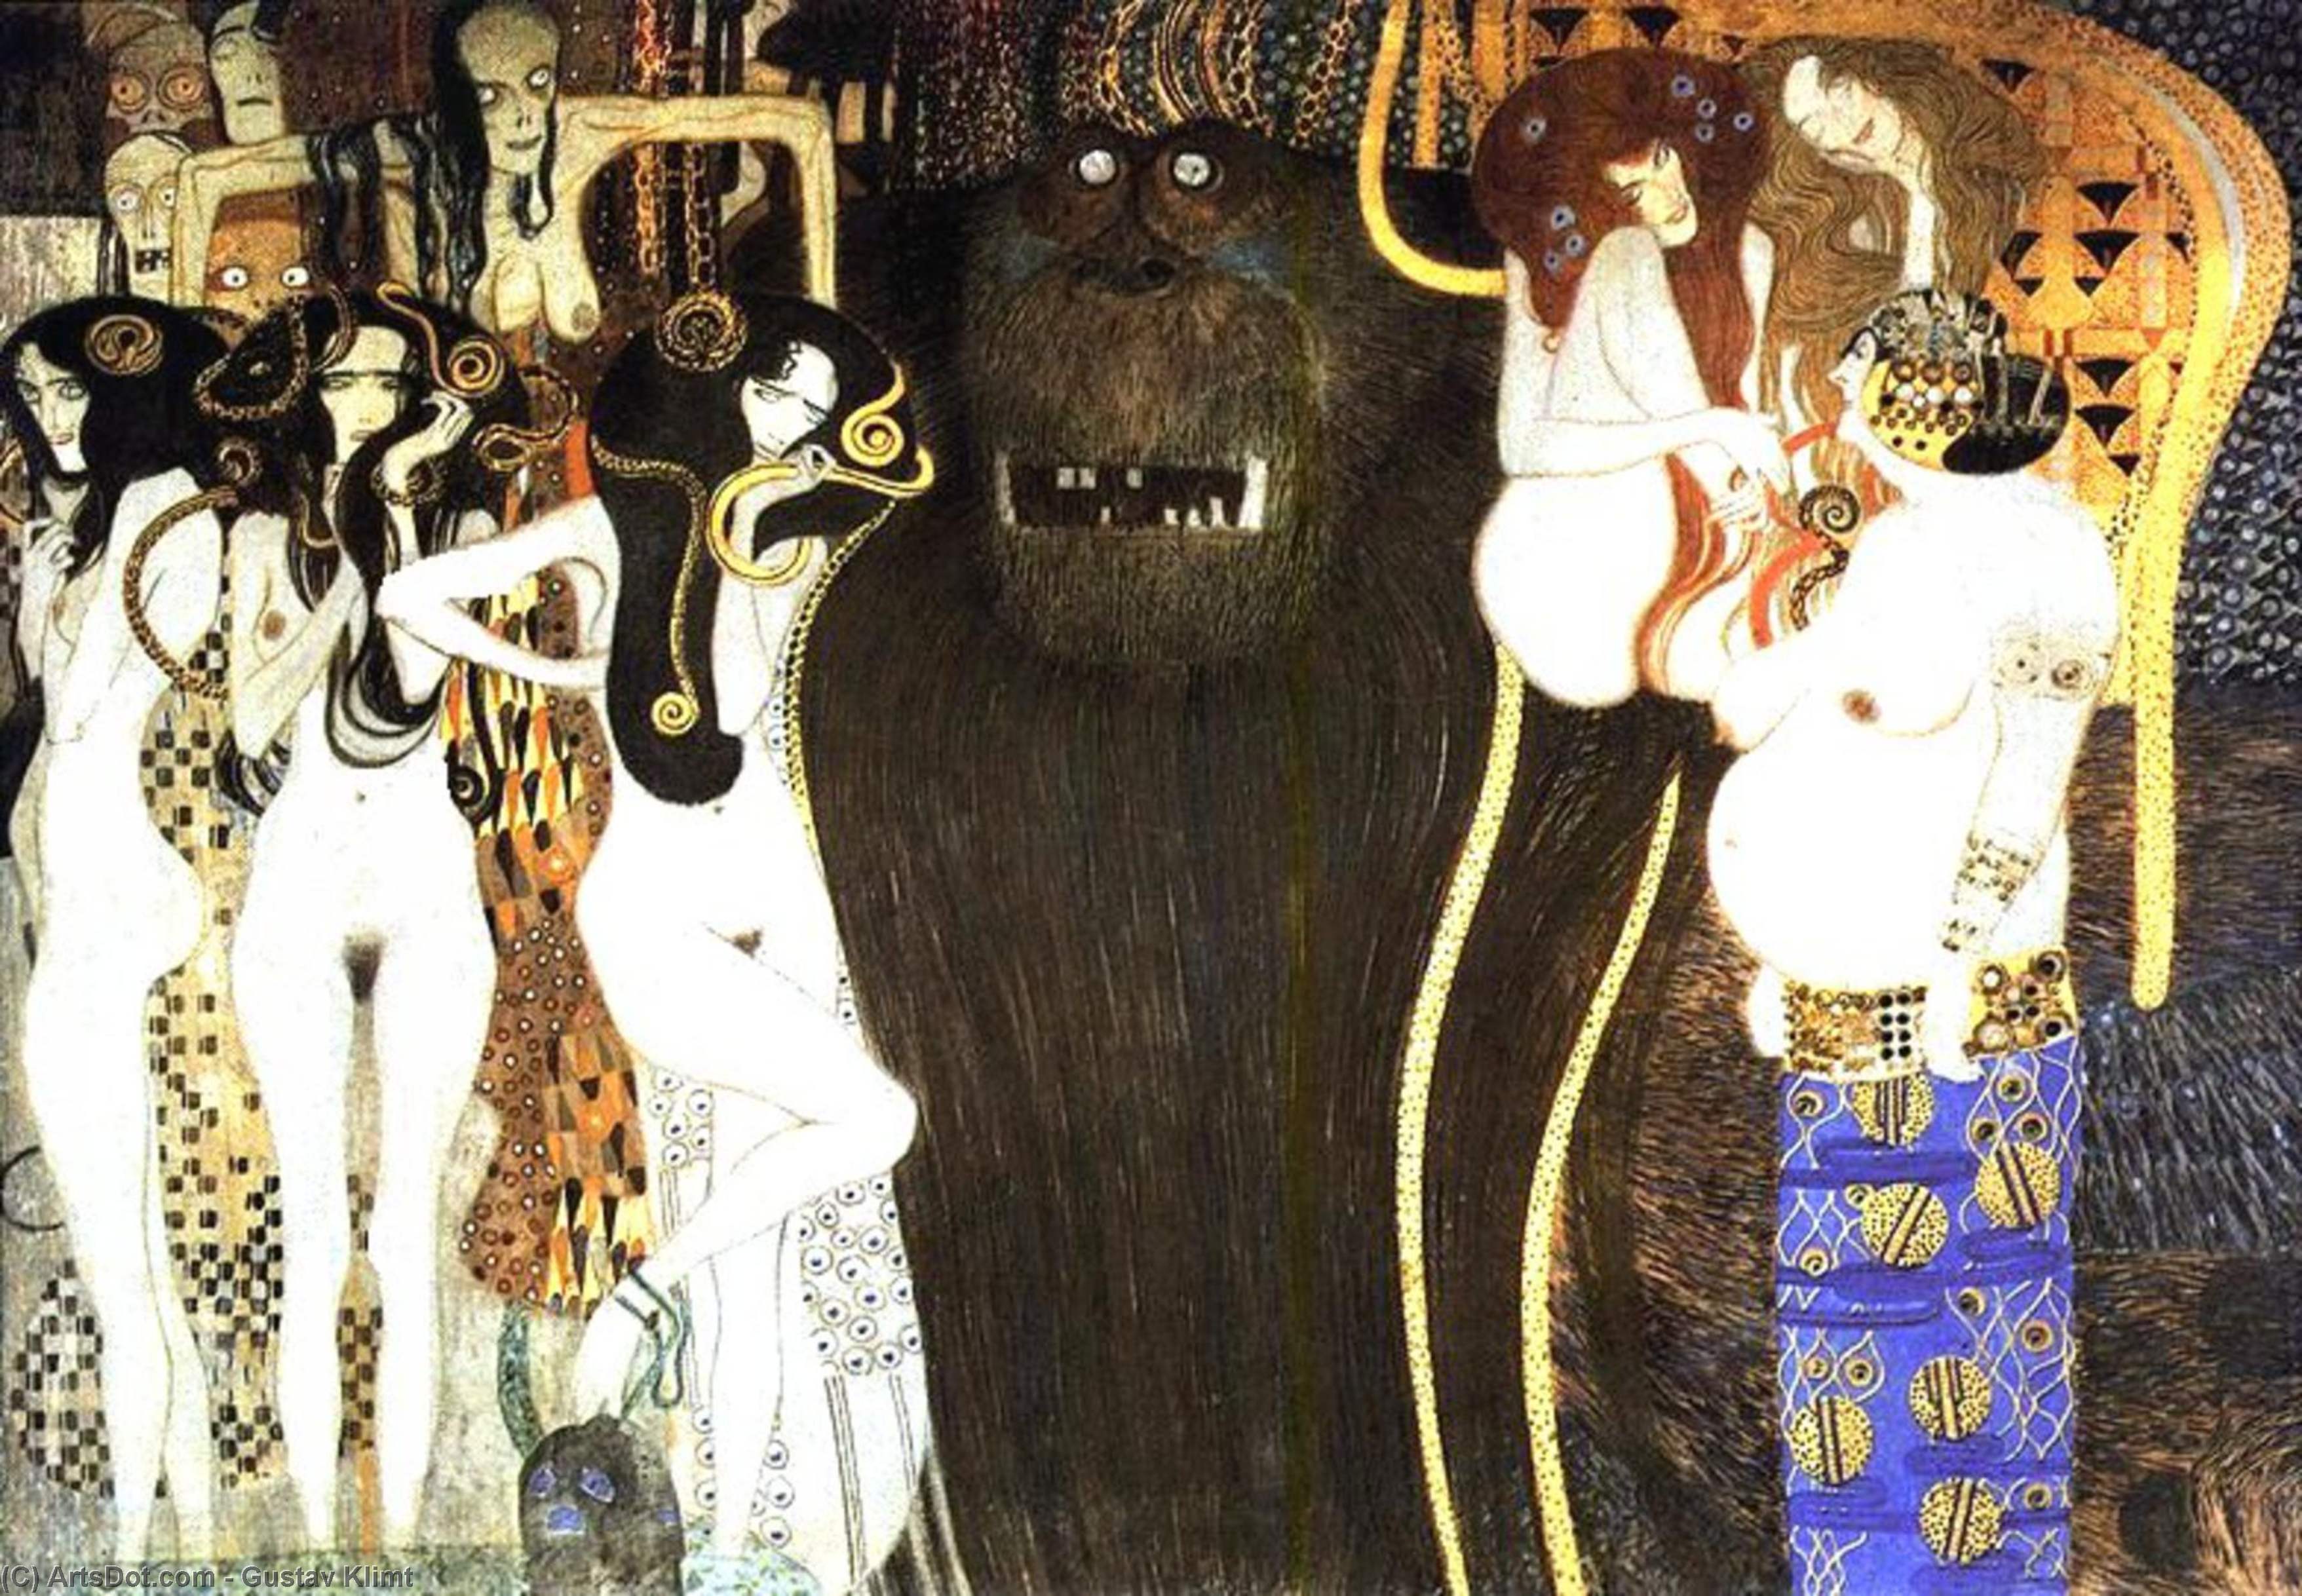 WikiOO.org - אנציקלופדיה לאמנויות יפות - ציור, יצירות אמנות Gustav Klimt - The Beethoven Frieze: The Hostile Powers. Left part, detail